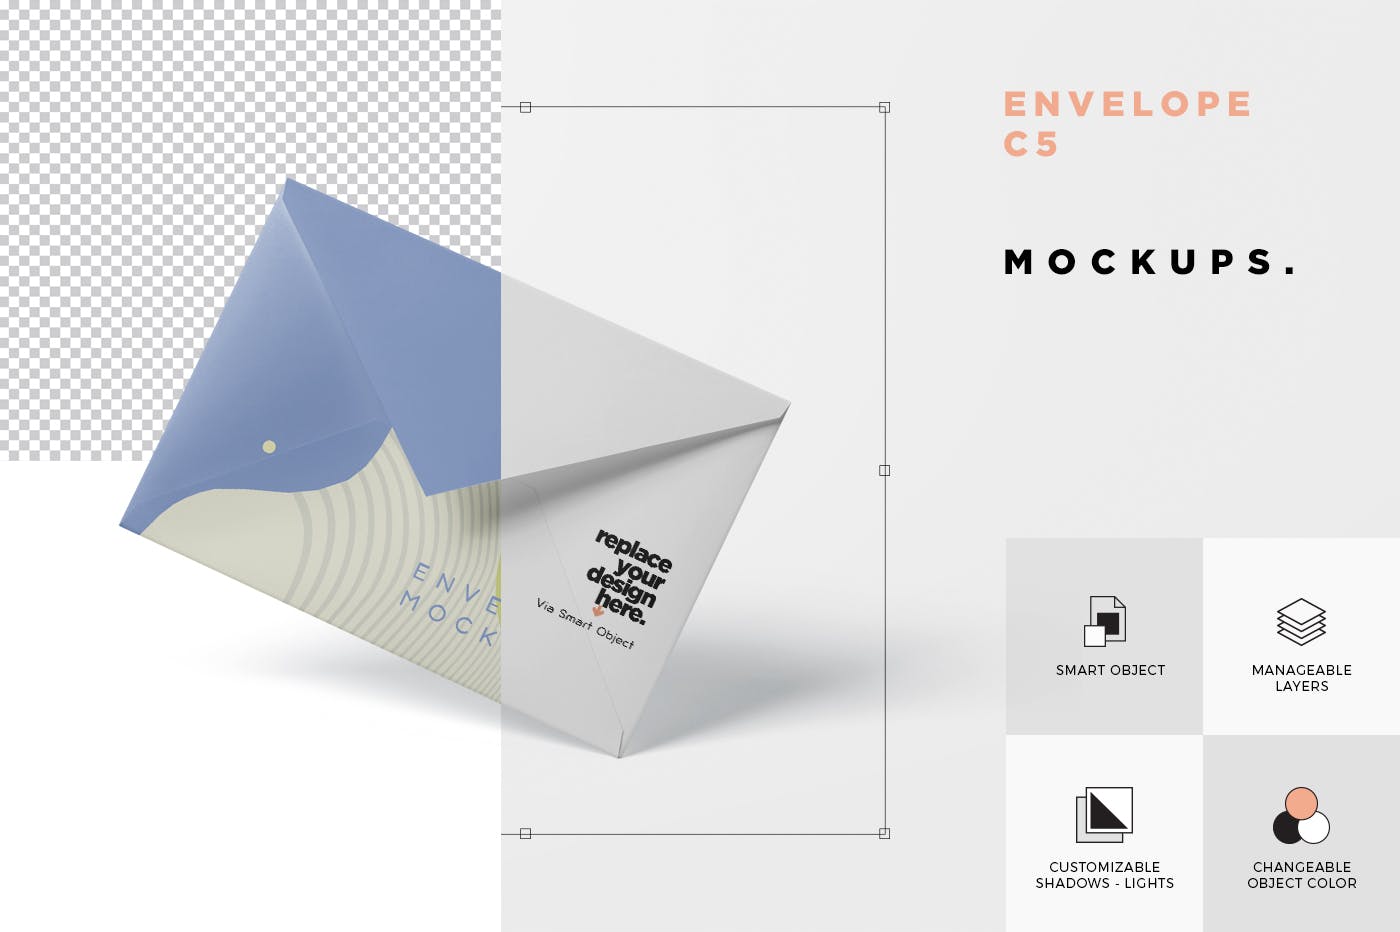 高端企业信封外观设计图第一素材精选模板 Envelope C5 – C6 Mock-Up Set插图(6)